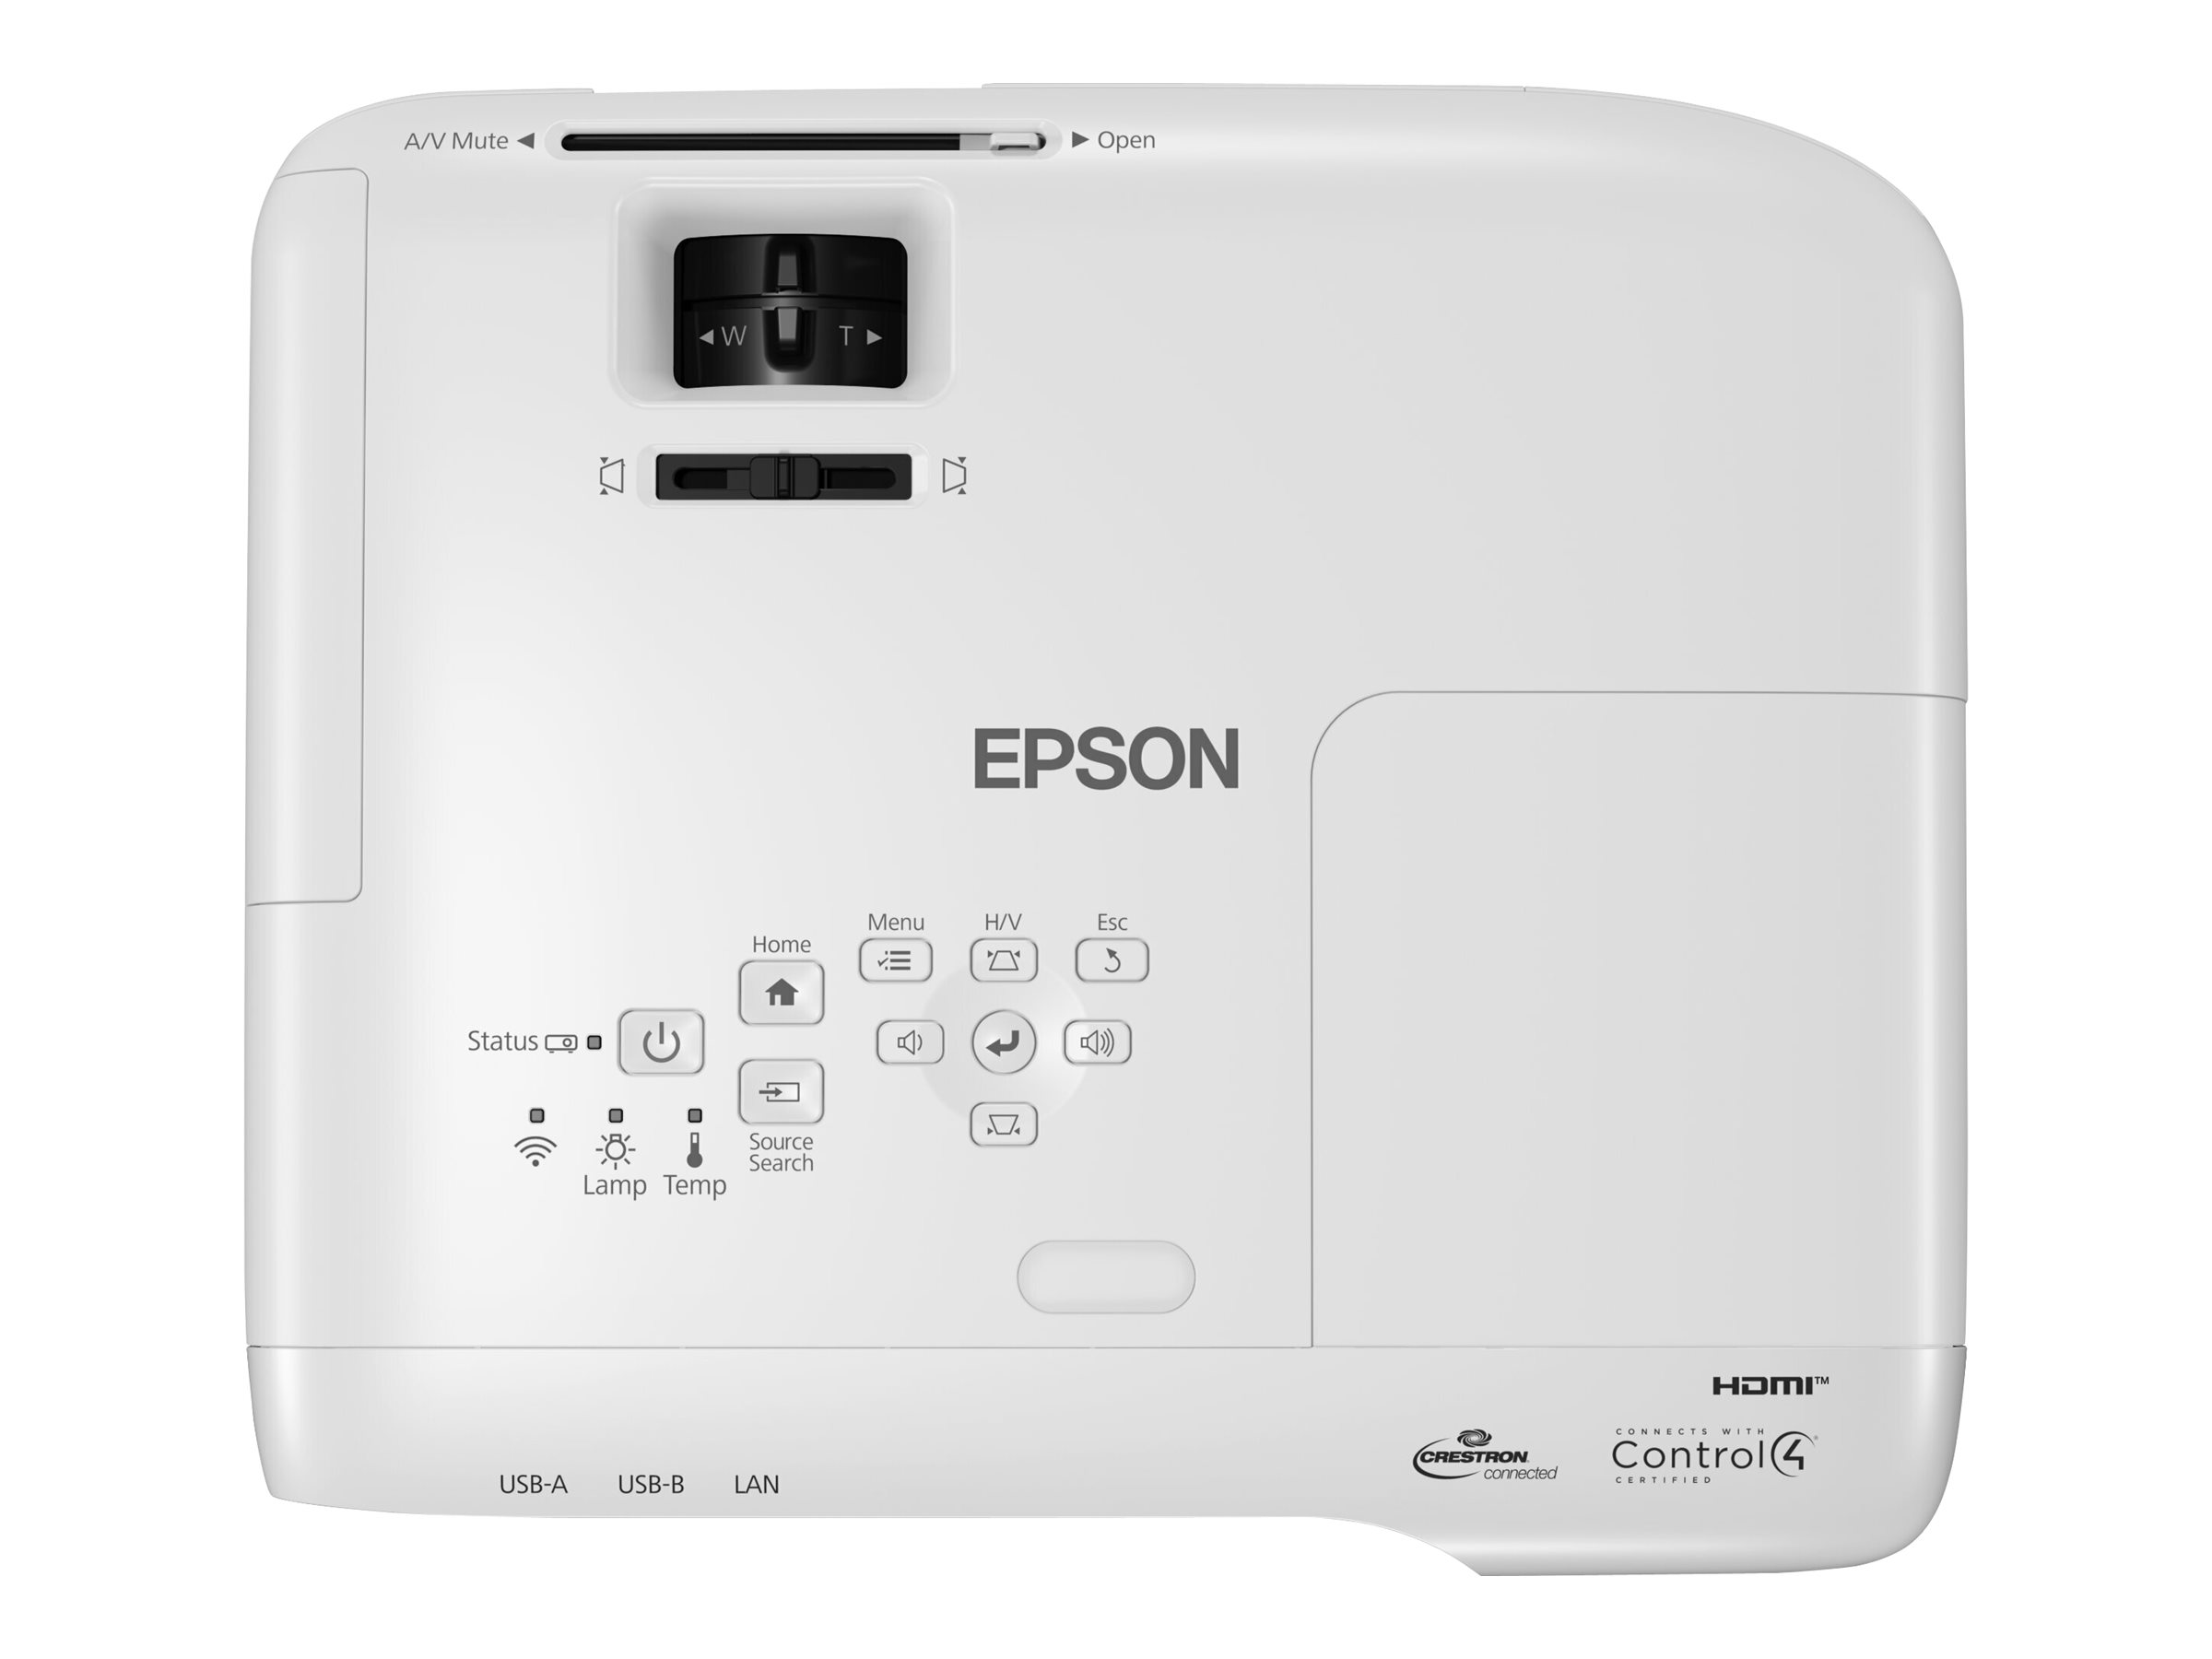 Epson EB-992F - Projecteur 3LCD - 4000 lumens (blanc) - 4000 lumens (couleur) - Full HD (1920 x 1080) - 16:9 - 1080p - sans fil 802.11n/LAN/Miracast - blanc - V11H988040 - Projecteurs numériques